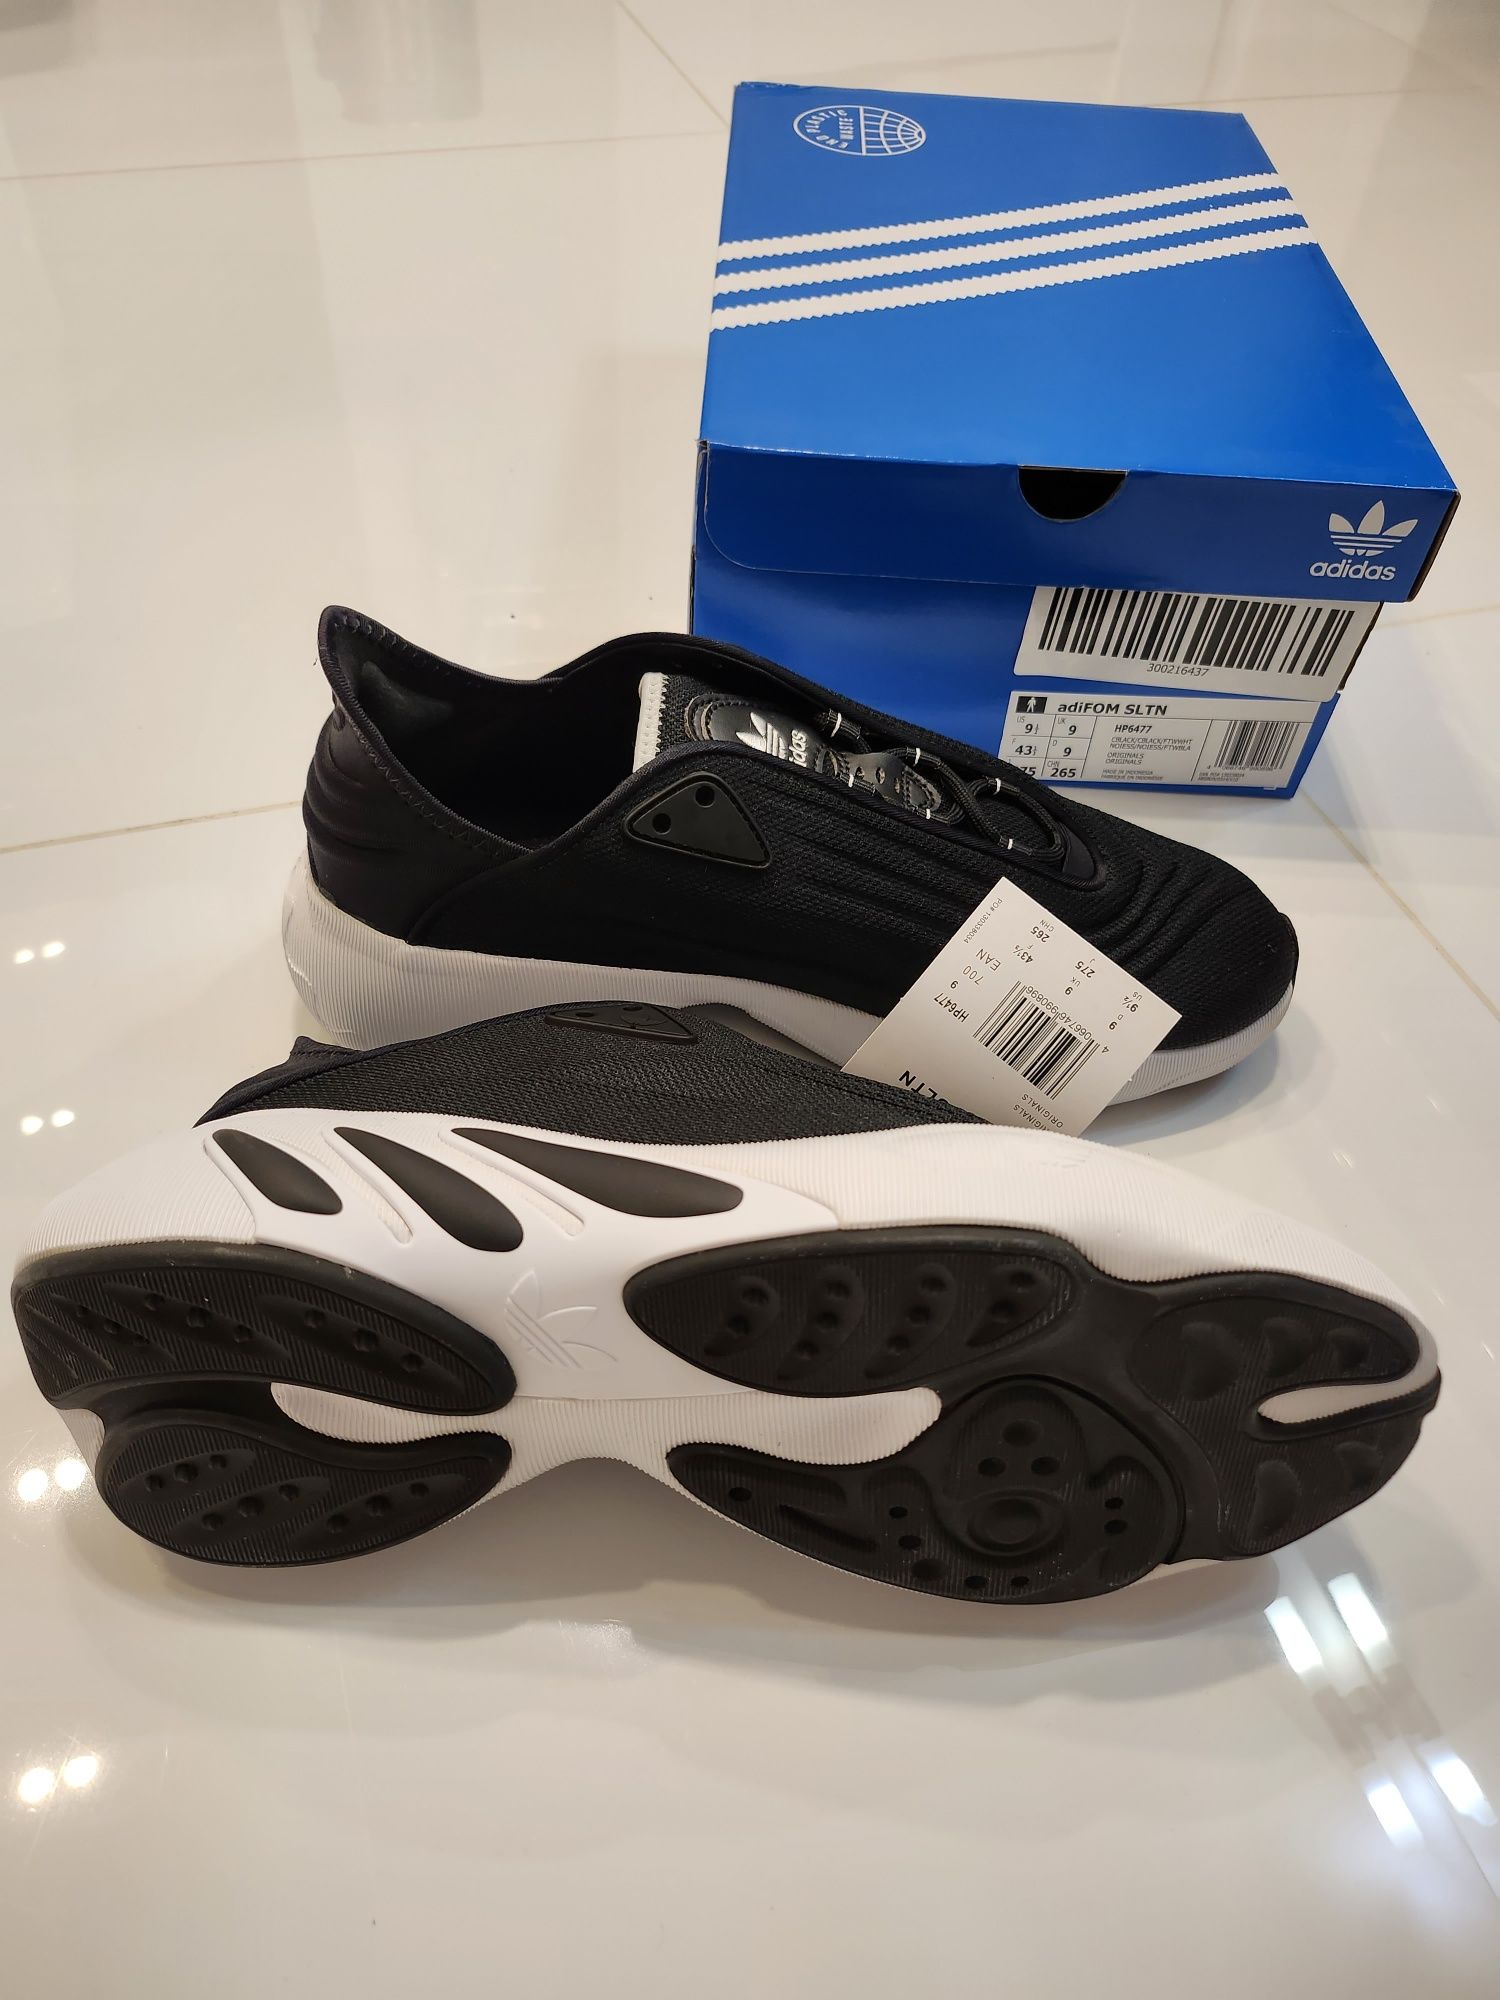 Sportowe buty męskie Adidas  Adifom SLTN Shoes, HP6477. Rozm. 43 1/3